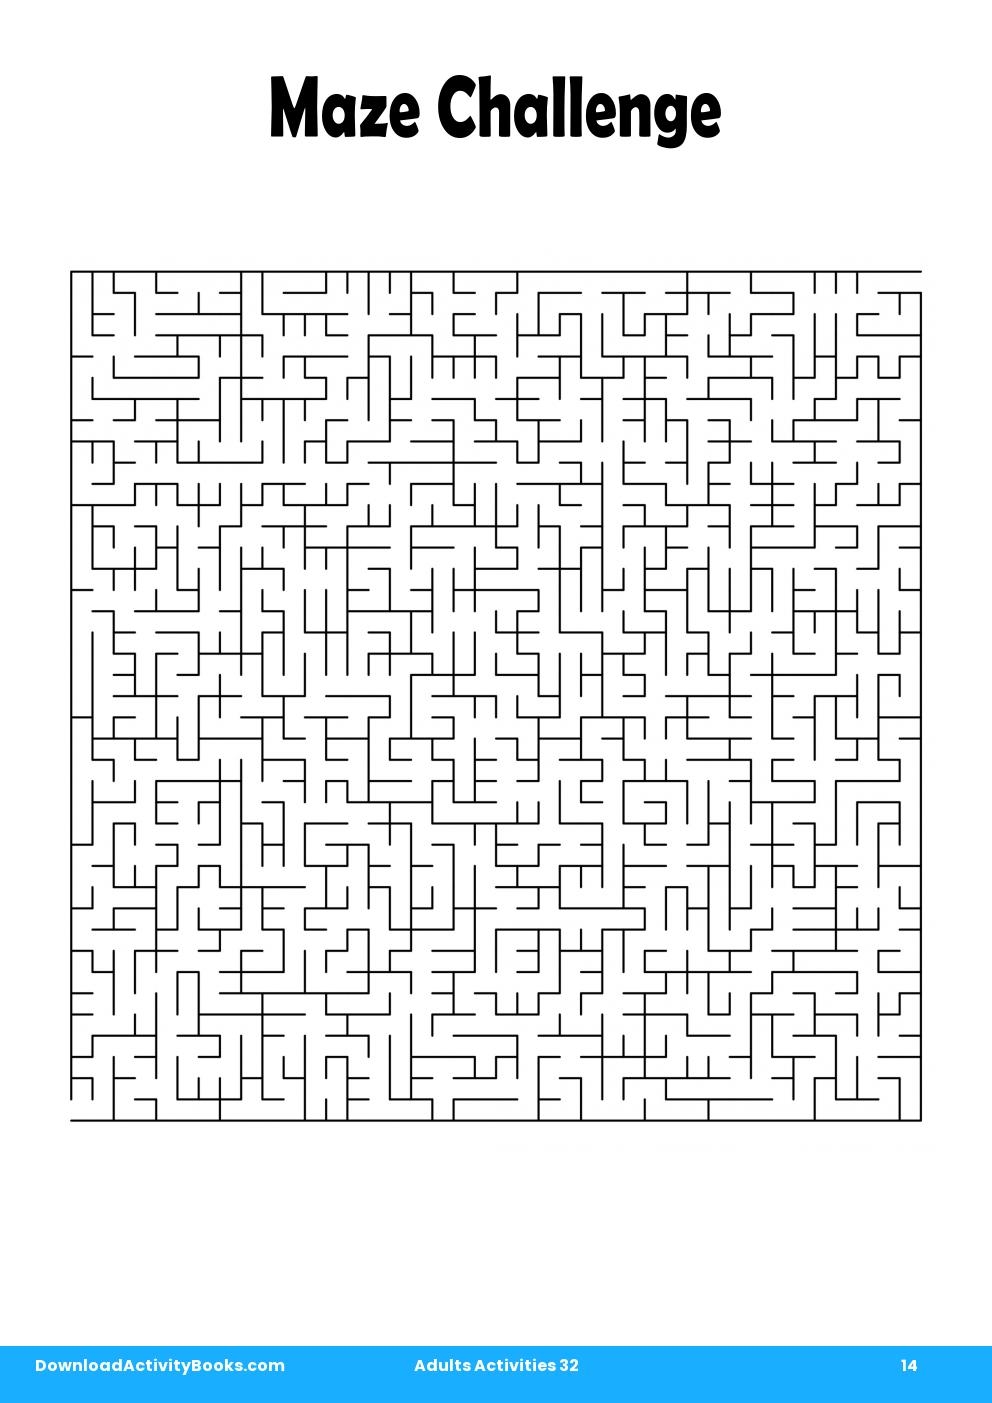 Maze Challenge in Adults Activities 32